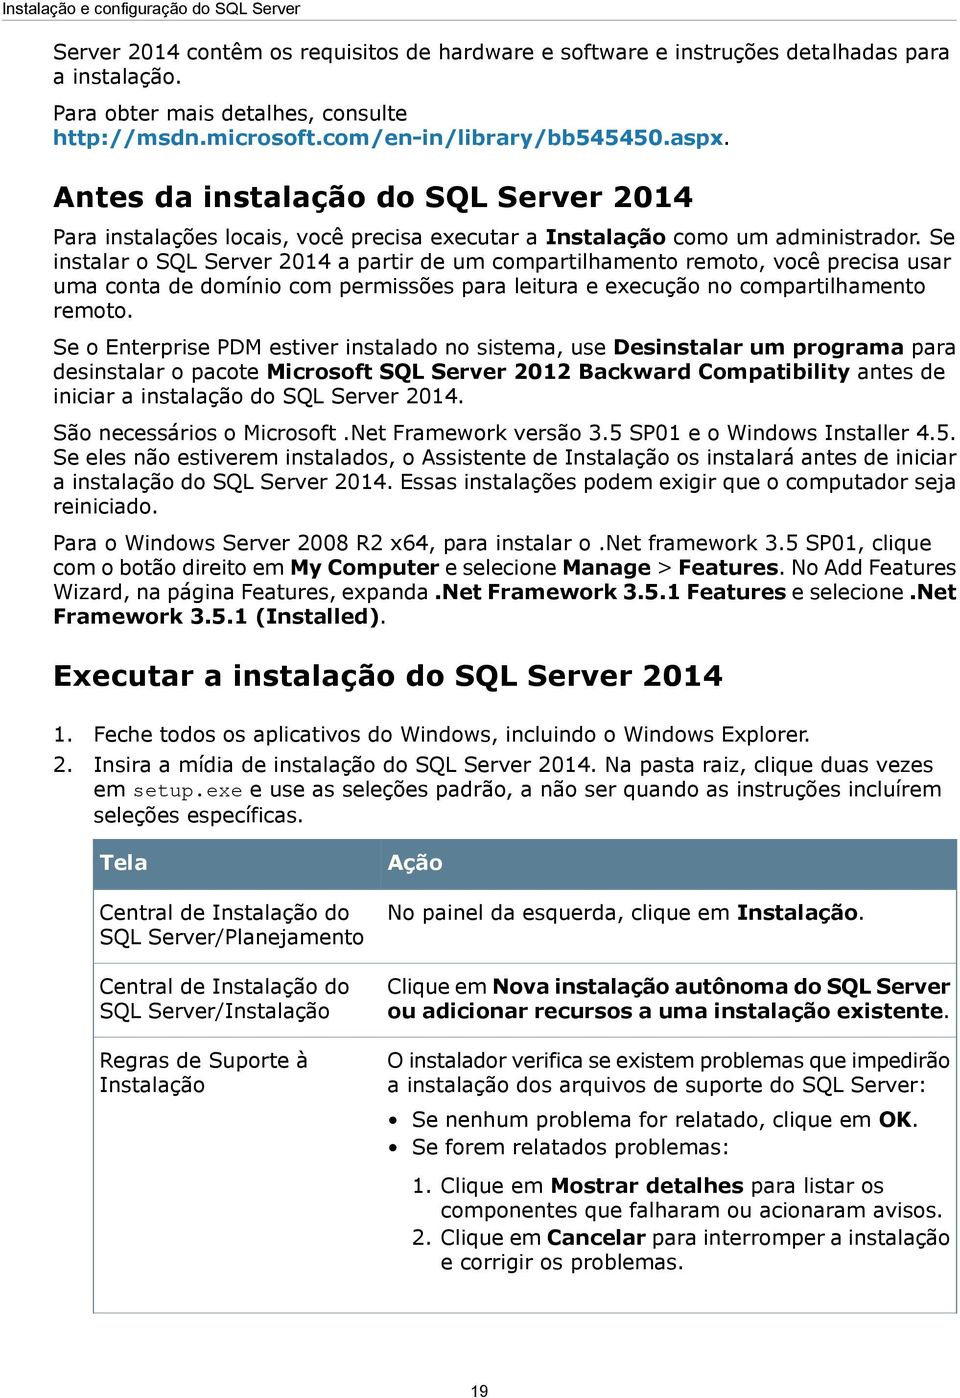 Se instalar o SQL Server 2014 a partir de um compartilhamento remoto, você precisa usar uma conta de domínio com permissões para leitura e execução no compartilhamento remoto.